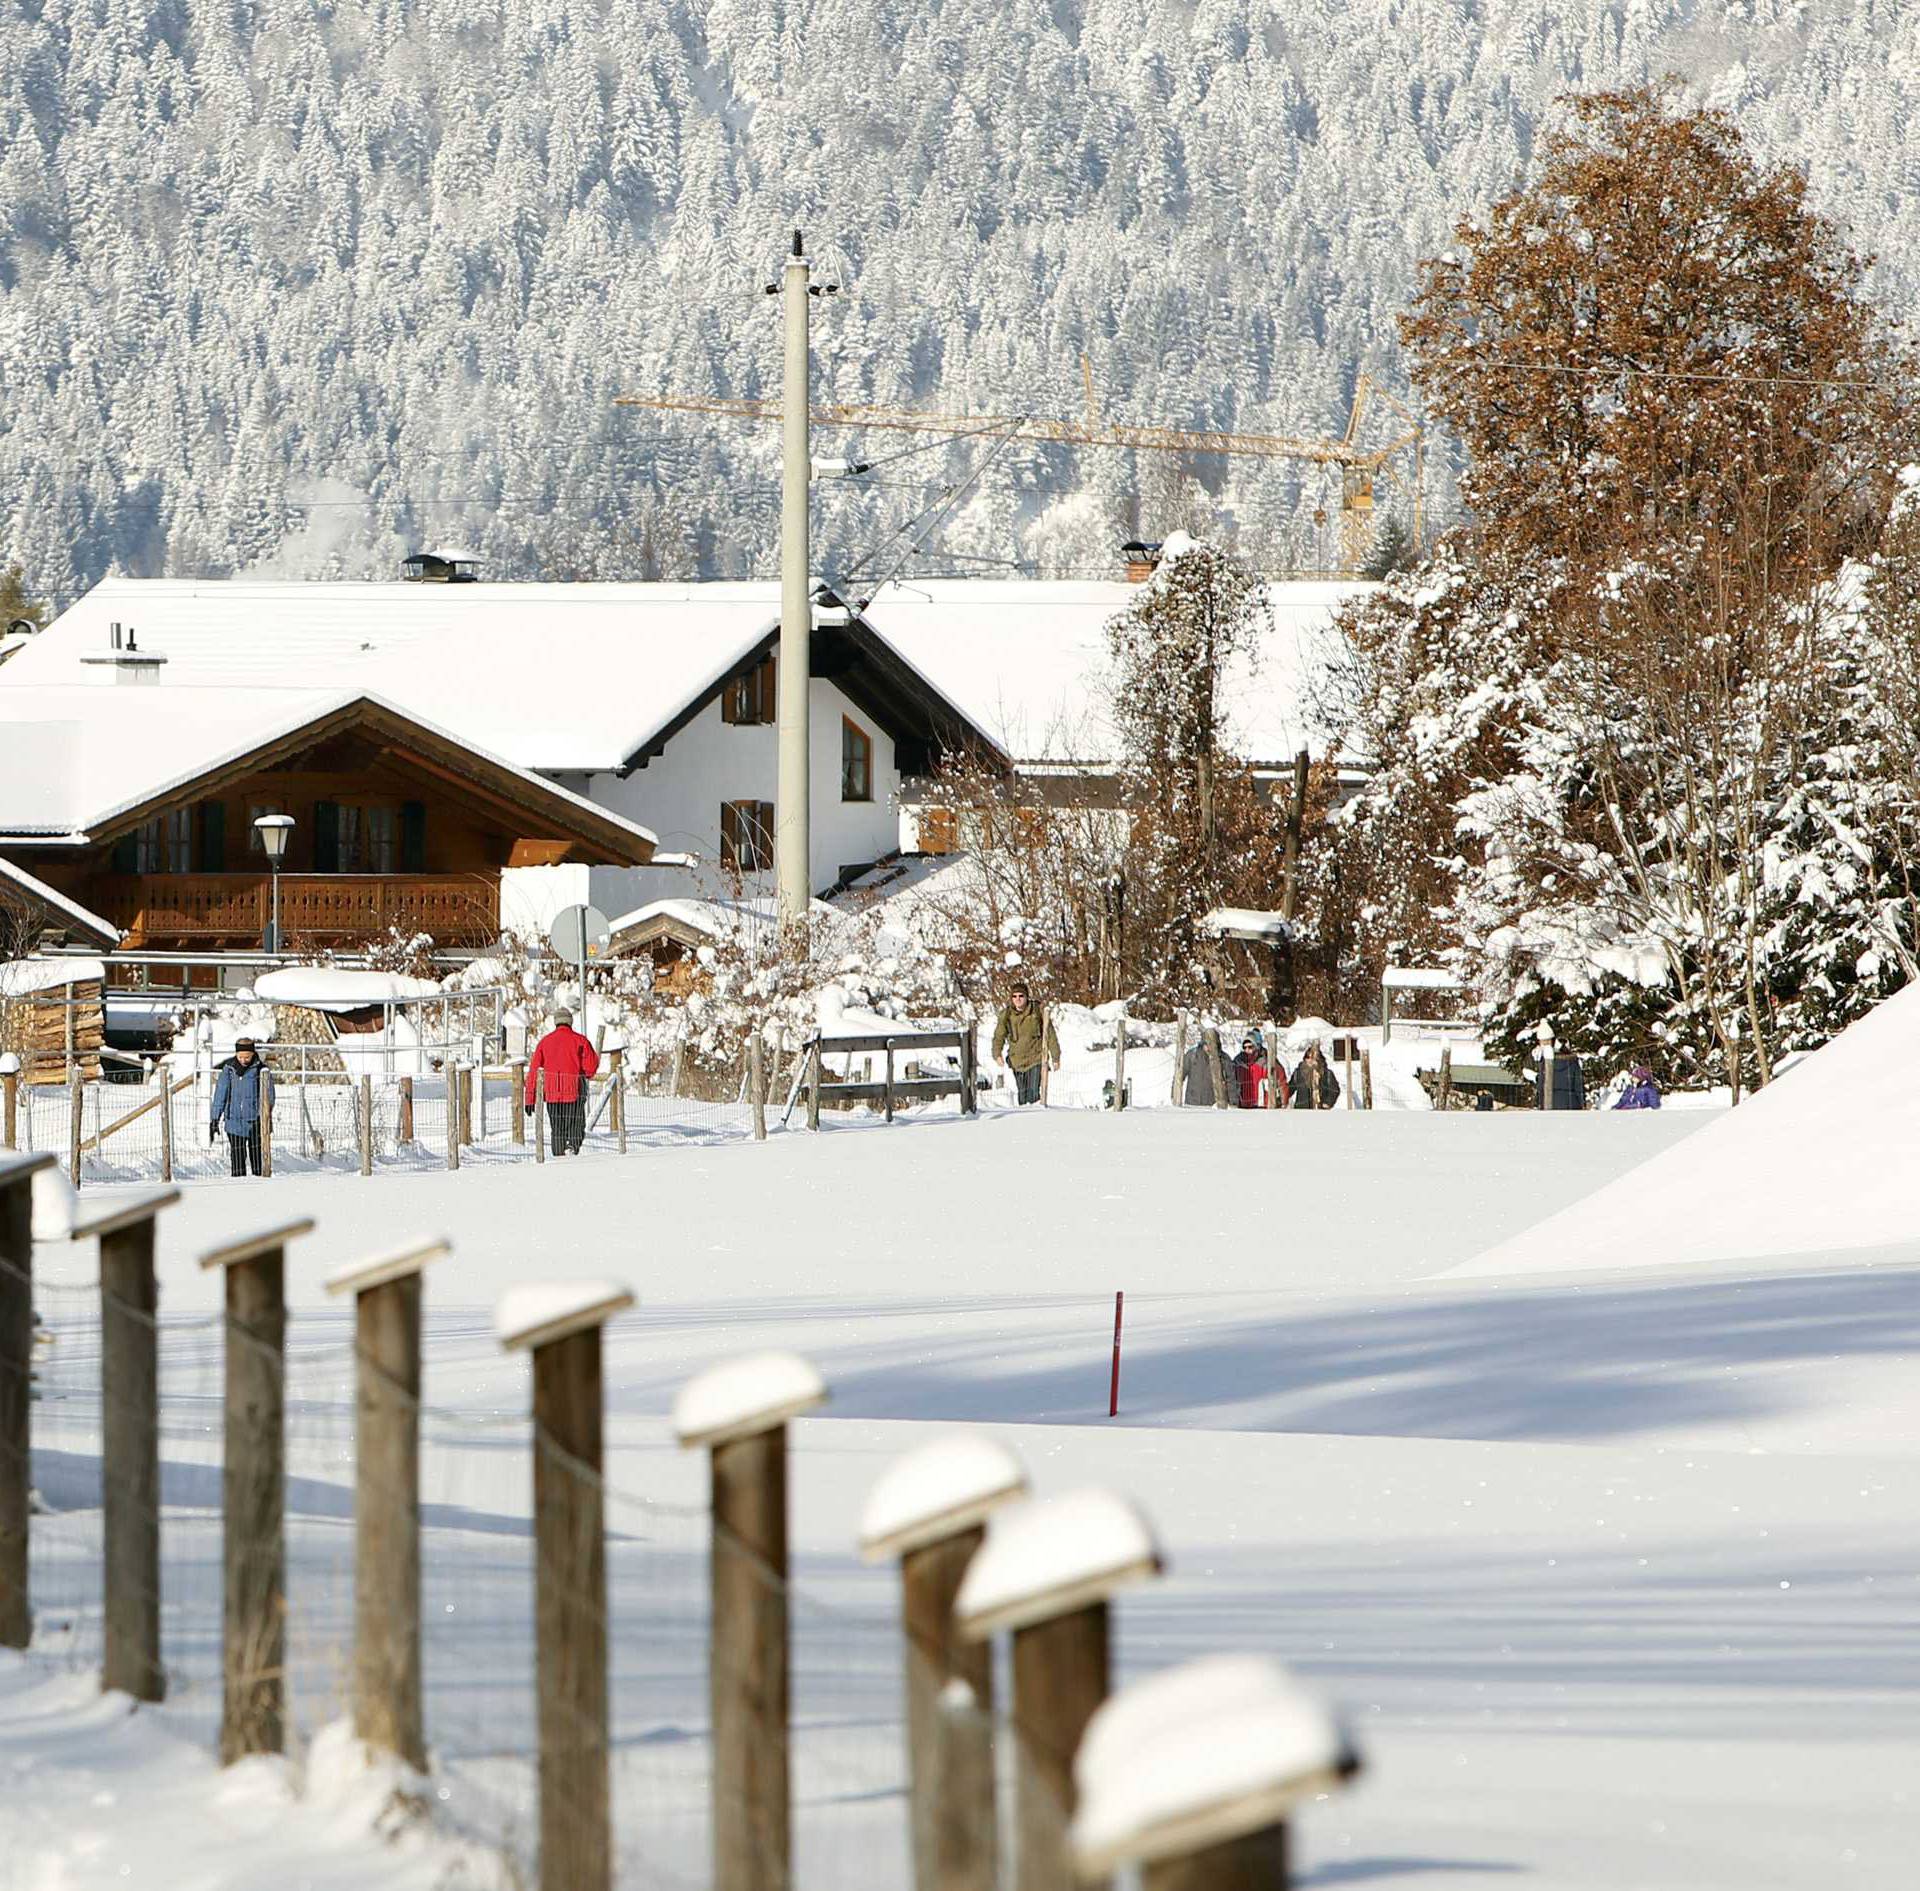 People walk through the snow during a sunny day in Garmisch-Partenkirchen